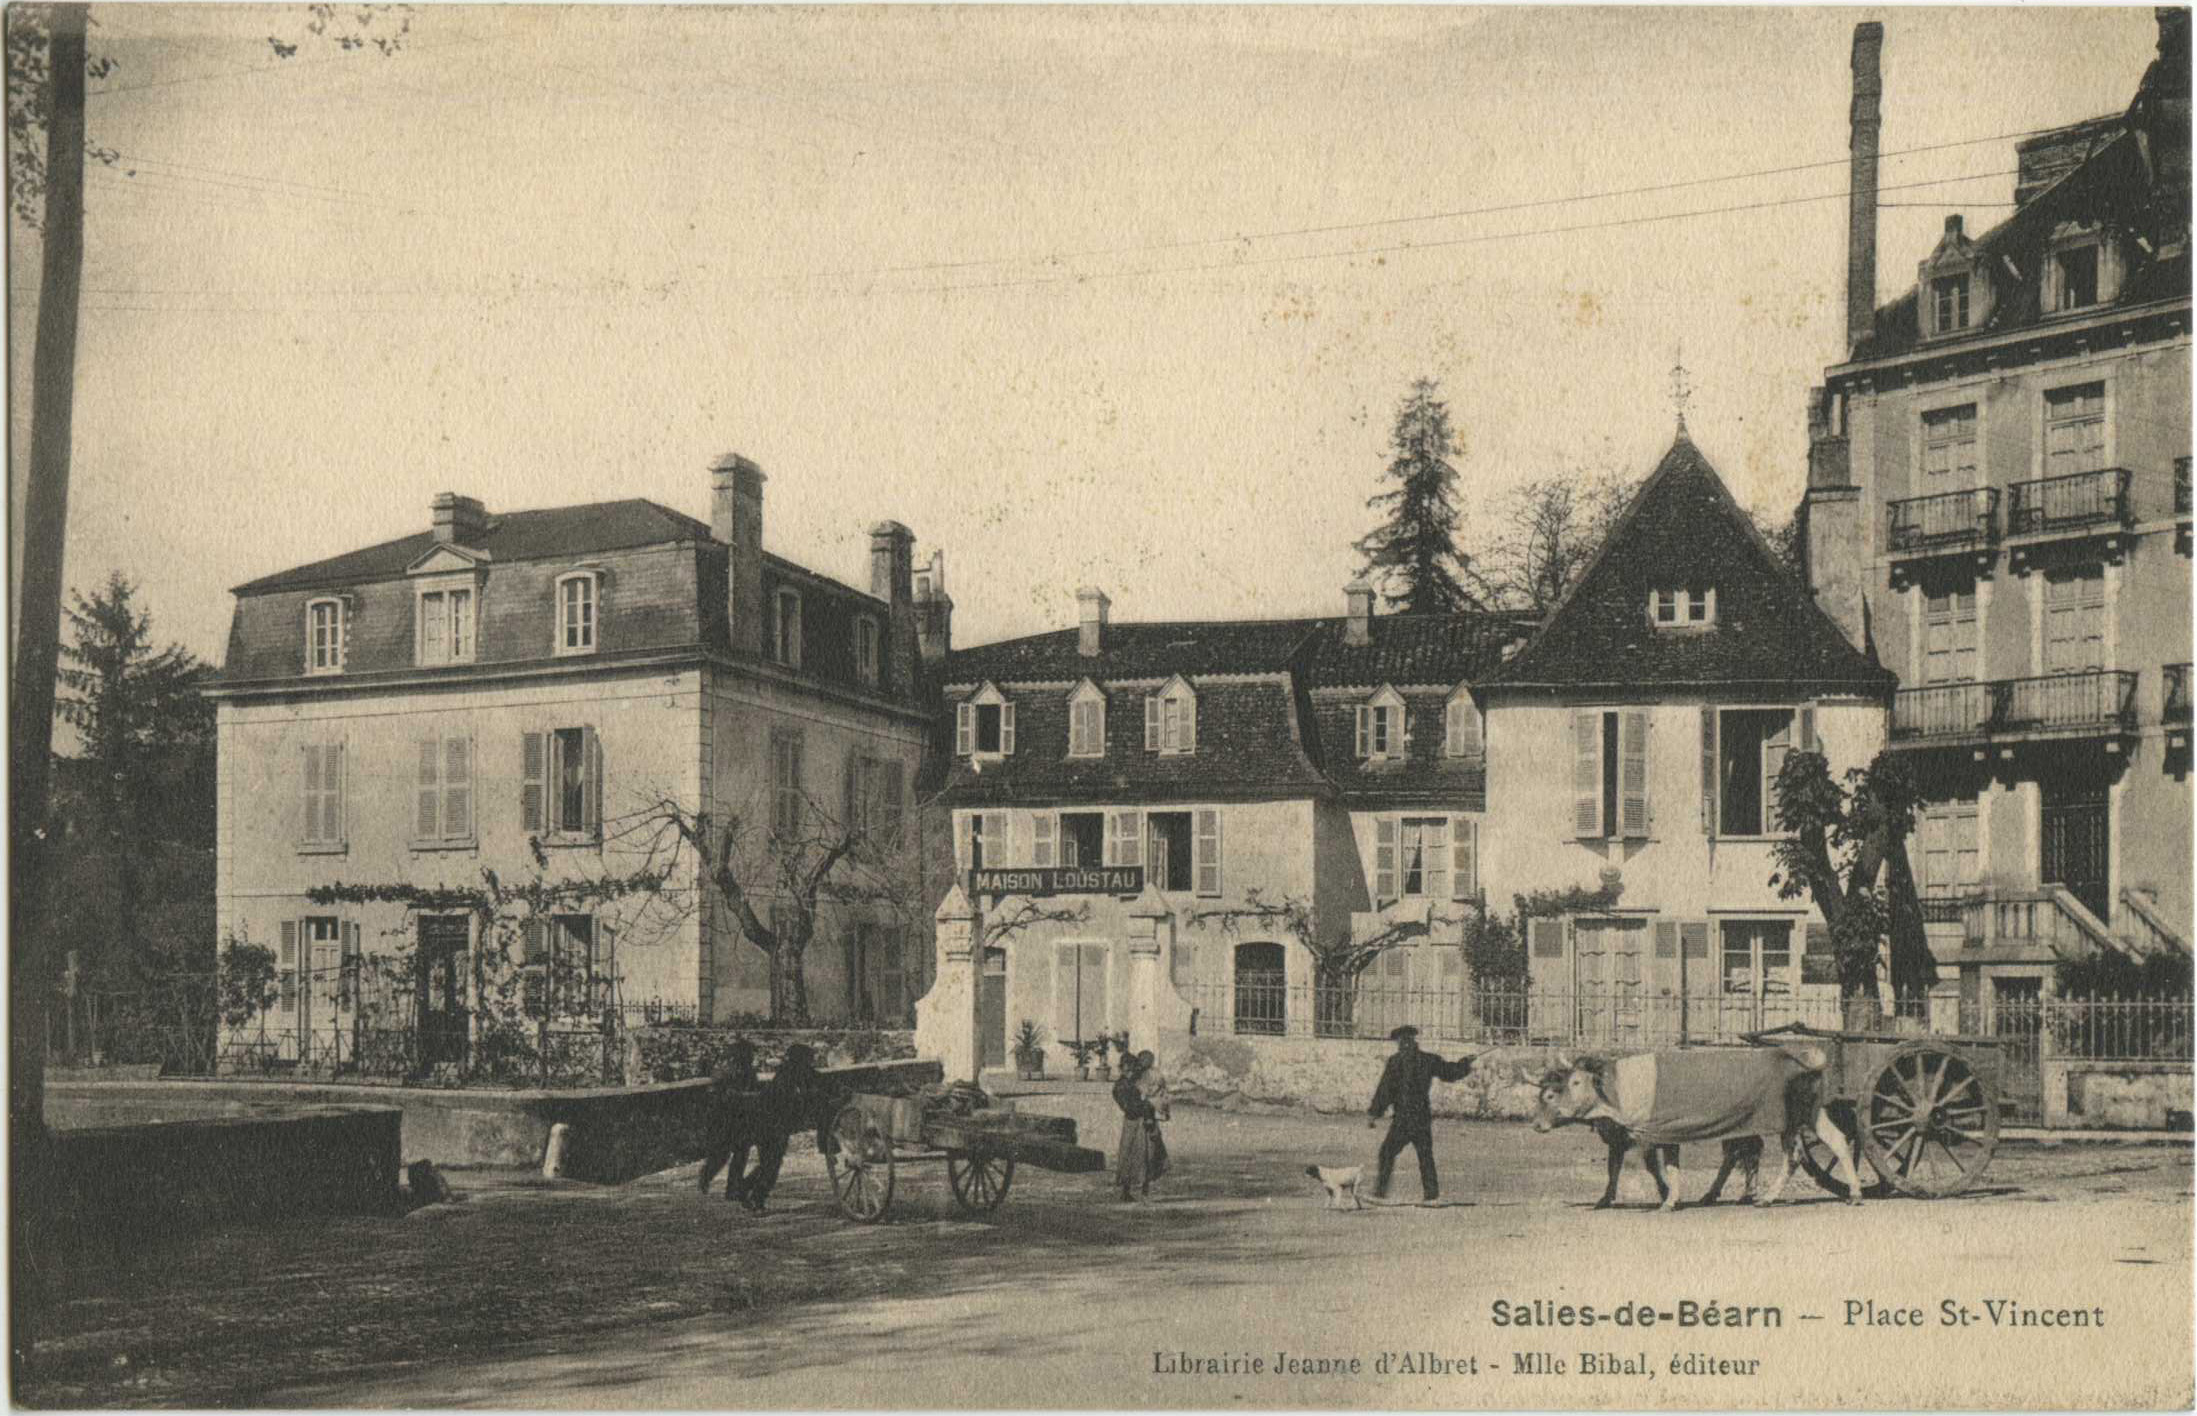 Salies-de-Béarn - Place St-Vincent